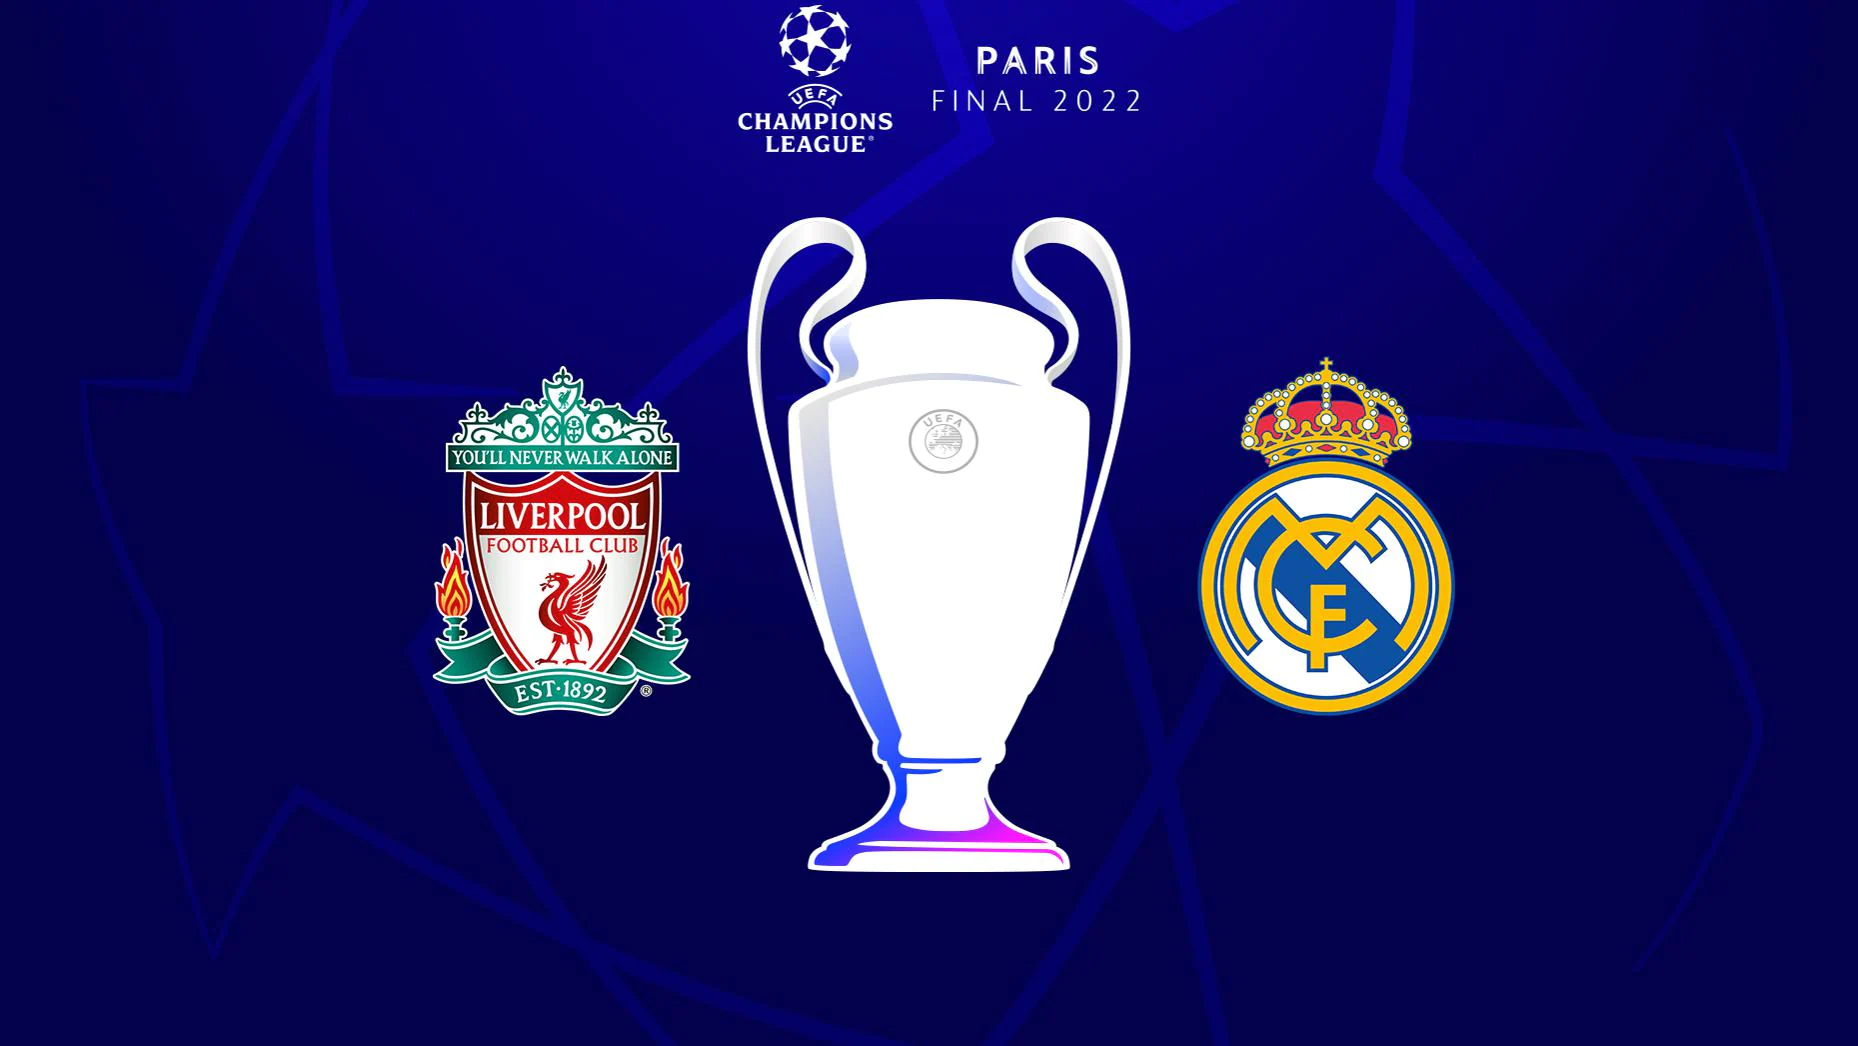 Liverpool - Real Madrid: gdzie oglądać finał Ligi Mistrzów 2022